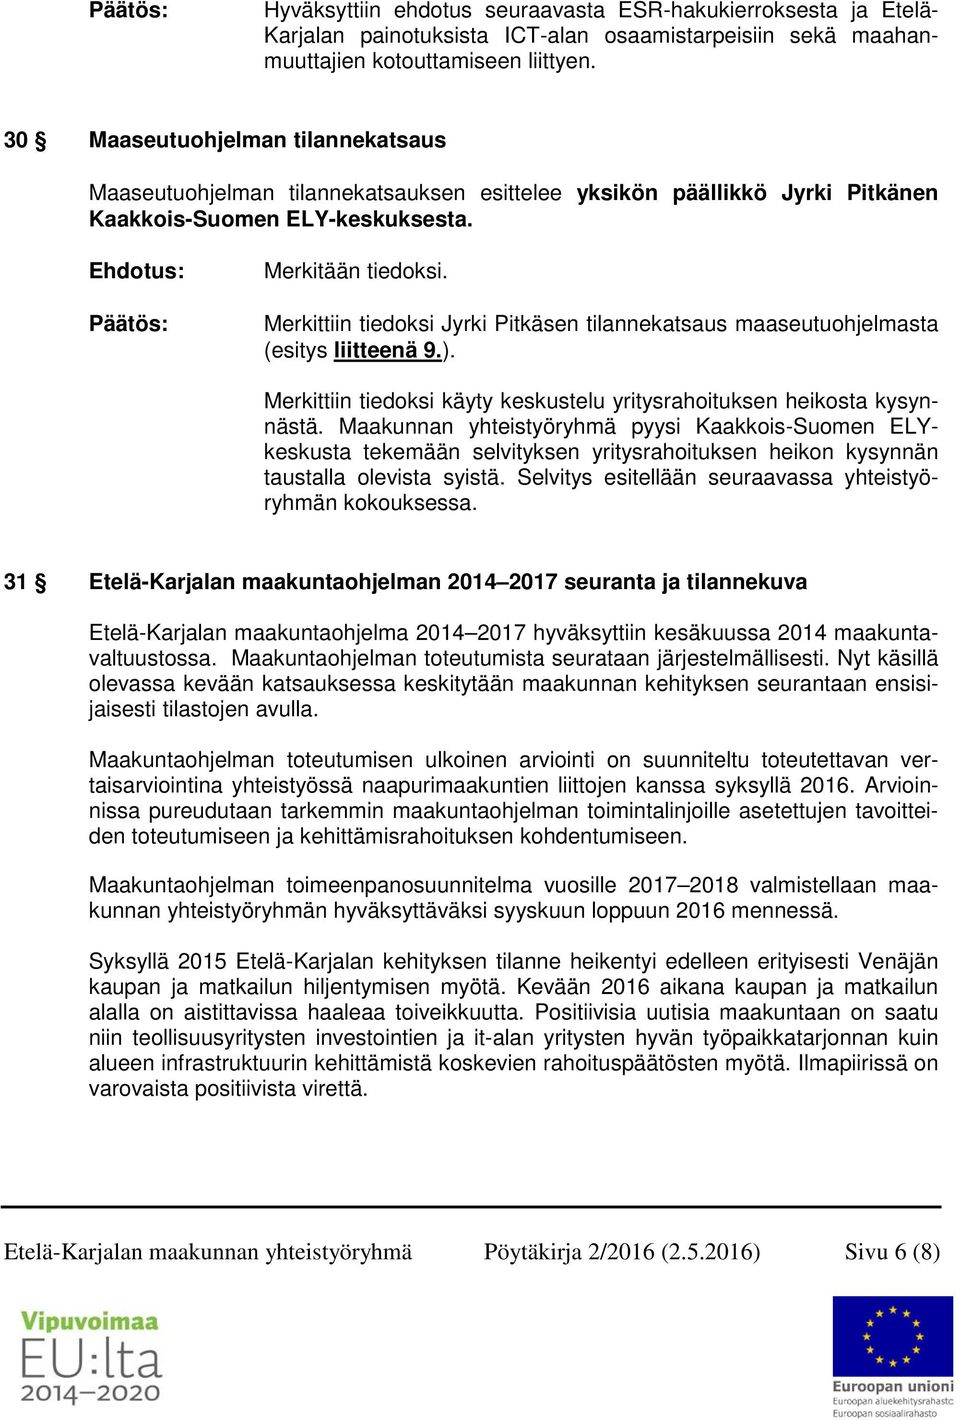 Merkittiin tiedoksi Jyrki Pitkäsen tilannekatsaus maaseutuohjelmasta (esitys liitteenä 9.). Merkittiin tiedoksi käyty keskustelu yritysrahoituksen heikosta kysynnästä.